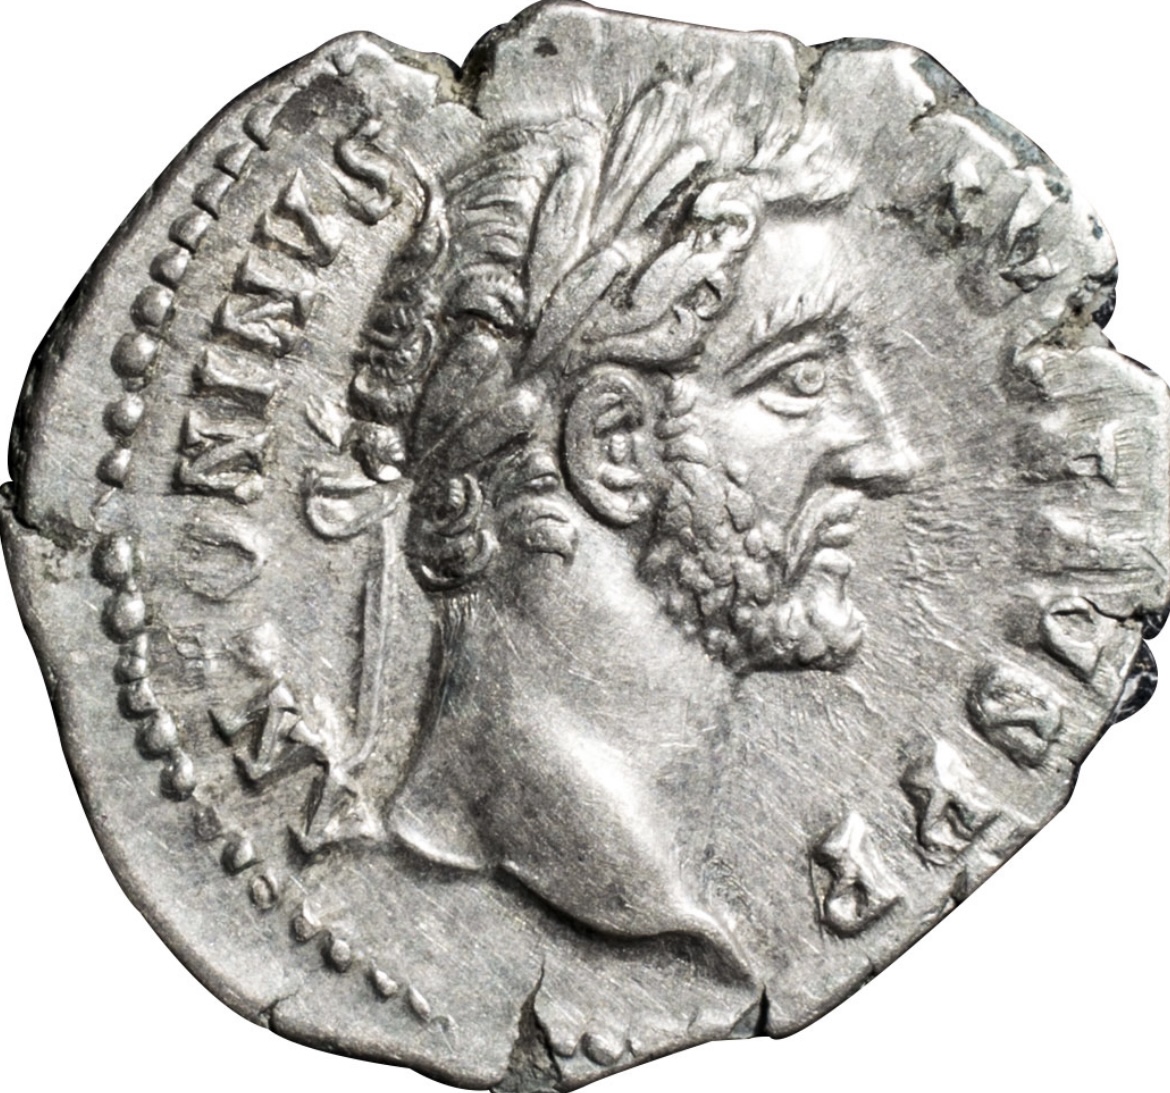 アントニヌス貨 デナトリウスと同じ古代ローマで流通した銀貨 | エブリデイゴールドラッシュコンシェルジュブログ